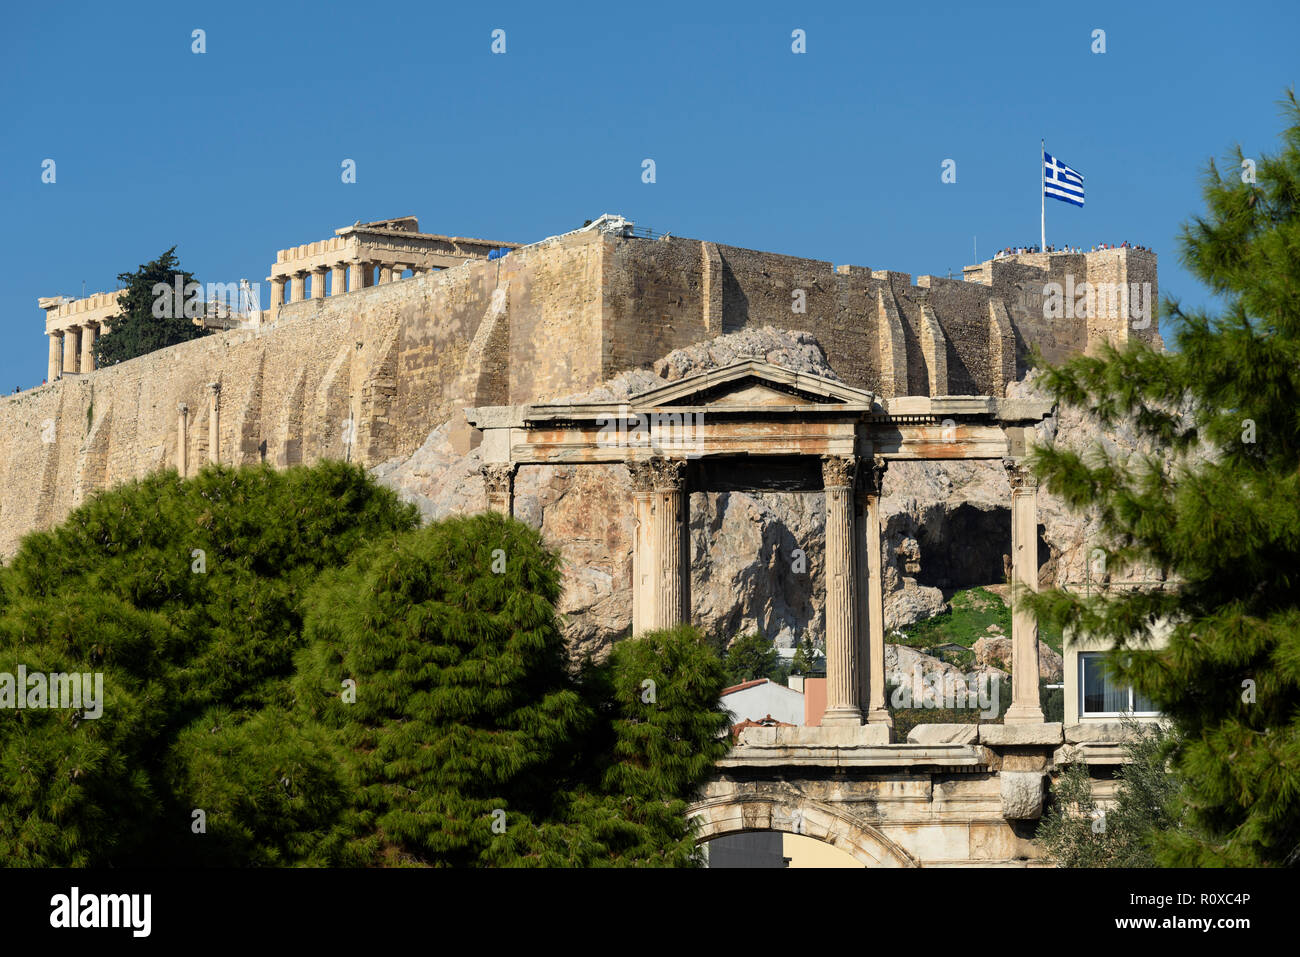 Athen. Griechenland. Römische Hadriansbogen des aka Hadrianstor, mit den Parthenon und die Akropolis im Hintergrund. (Giebel der oberen Ebene). Stockfoto